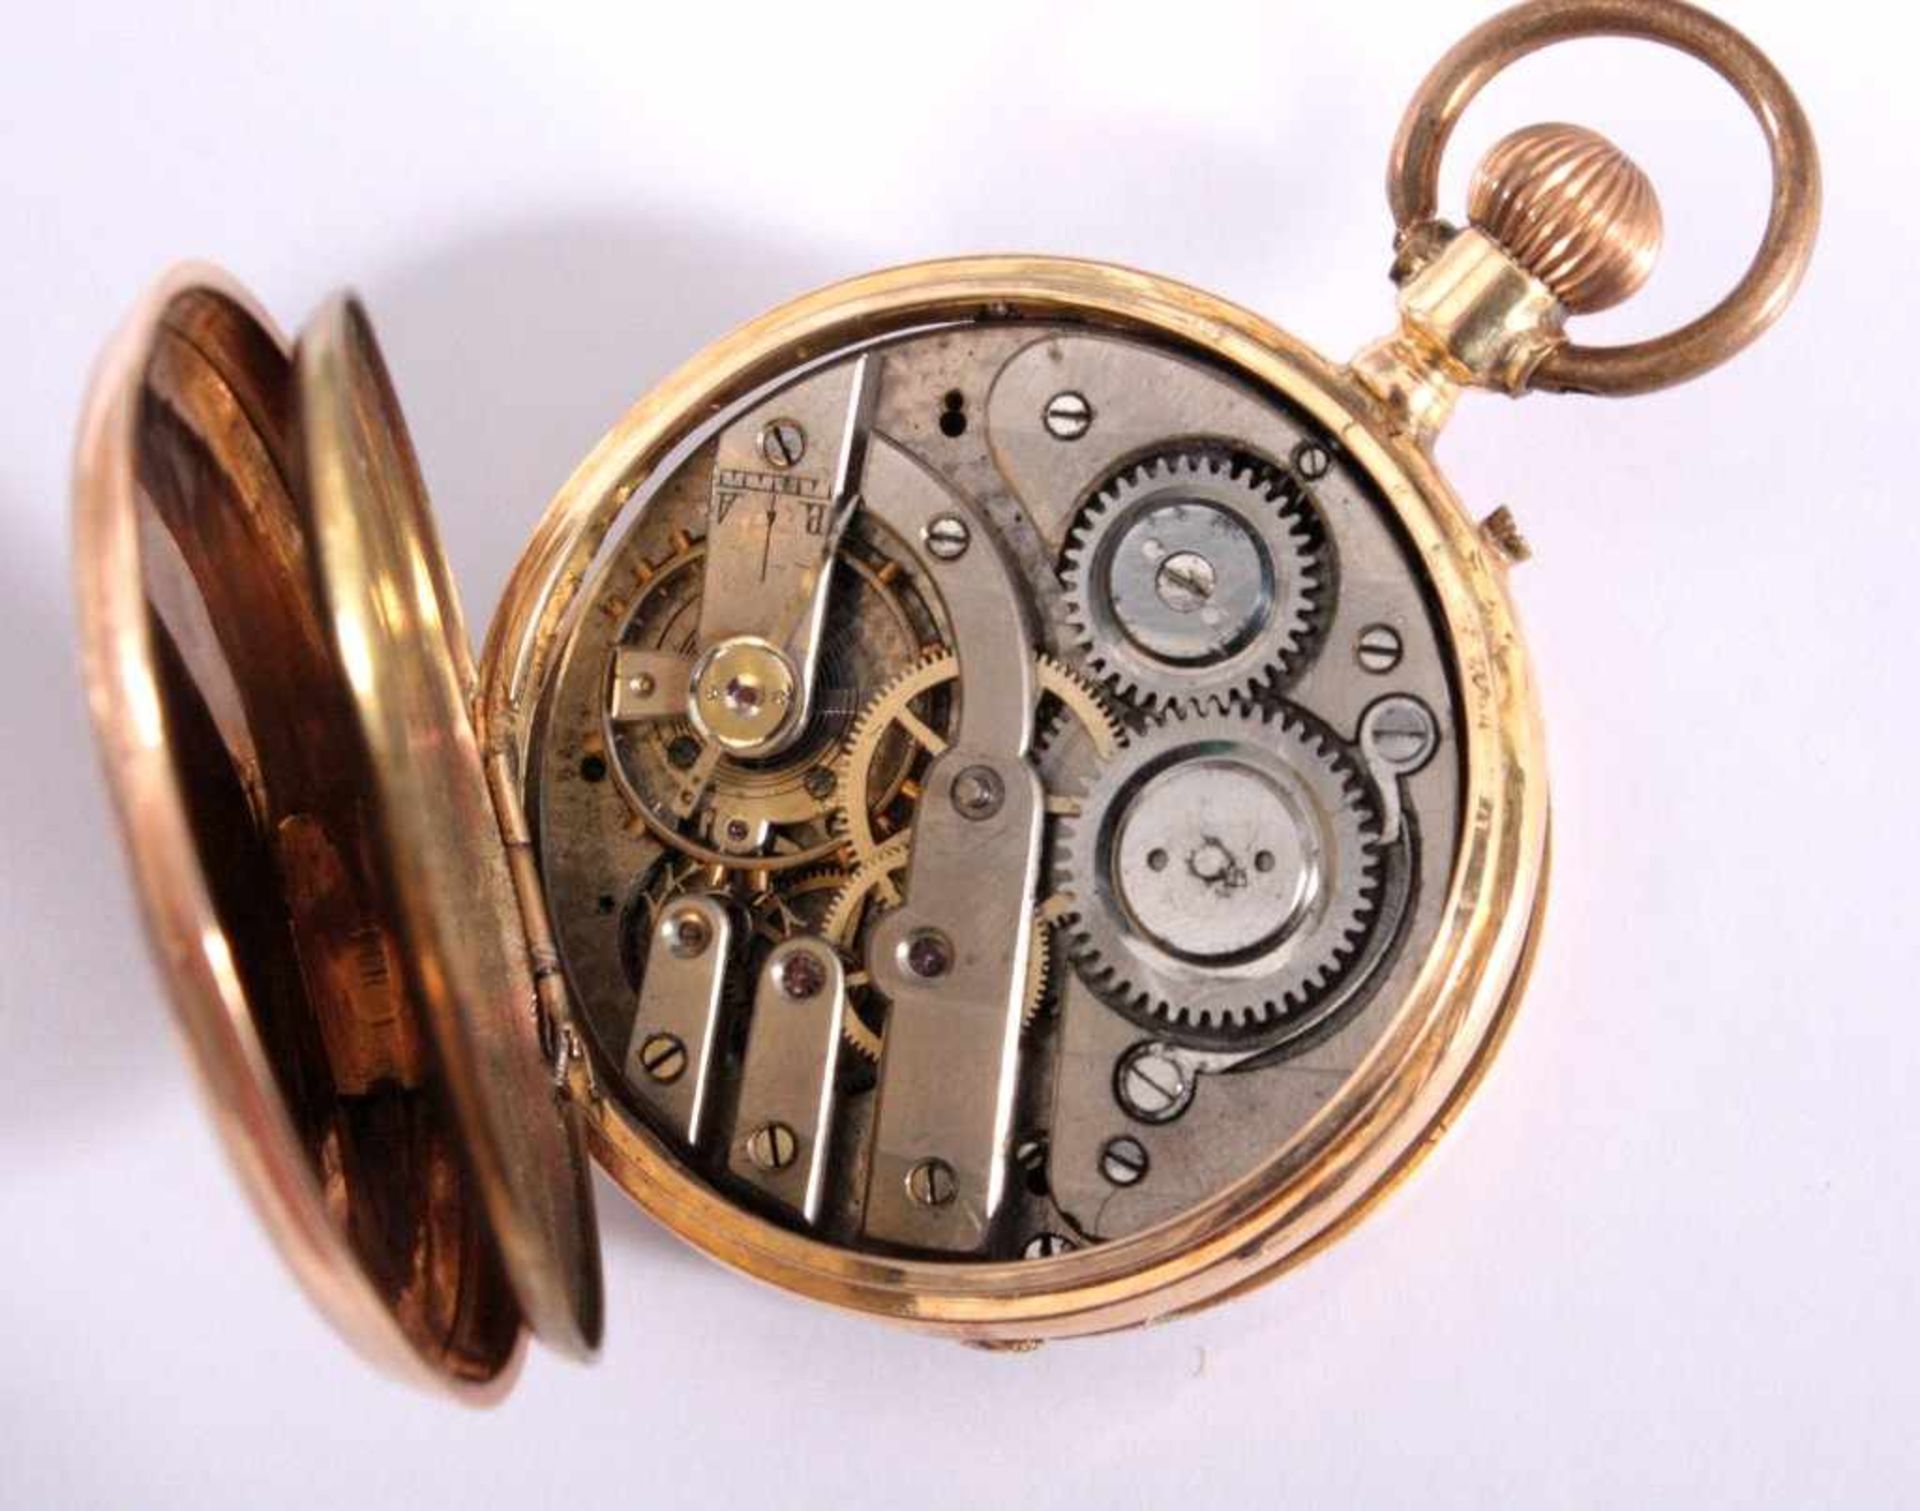 Herrentaschenuhr um 190014 kt Gelbgold im Uhren Deckel nummeriert 48412,Emailziferblatt mit - Bild 3 aus 3